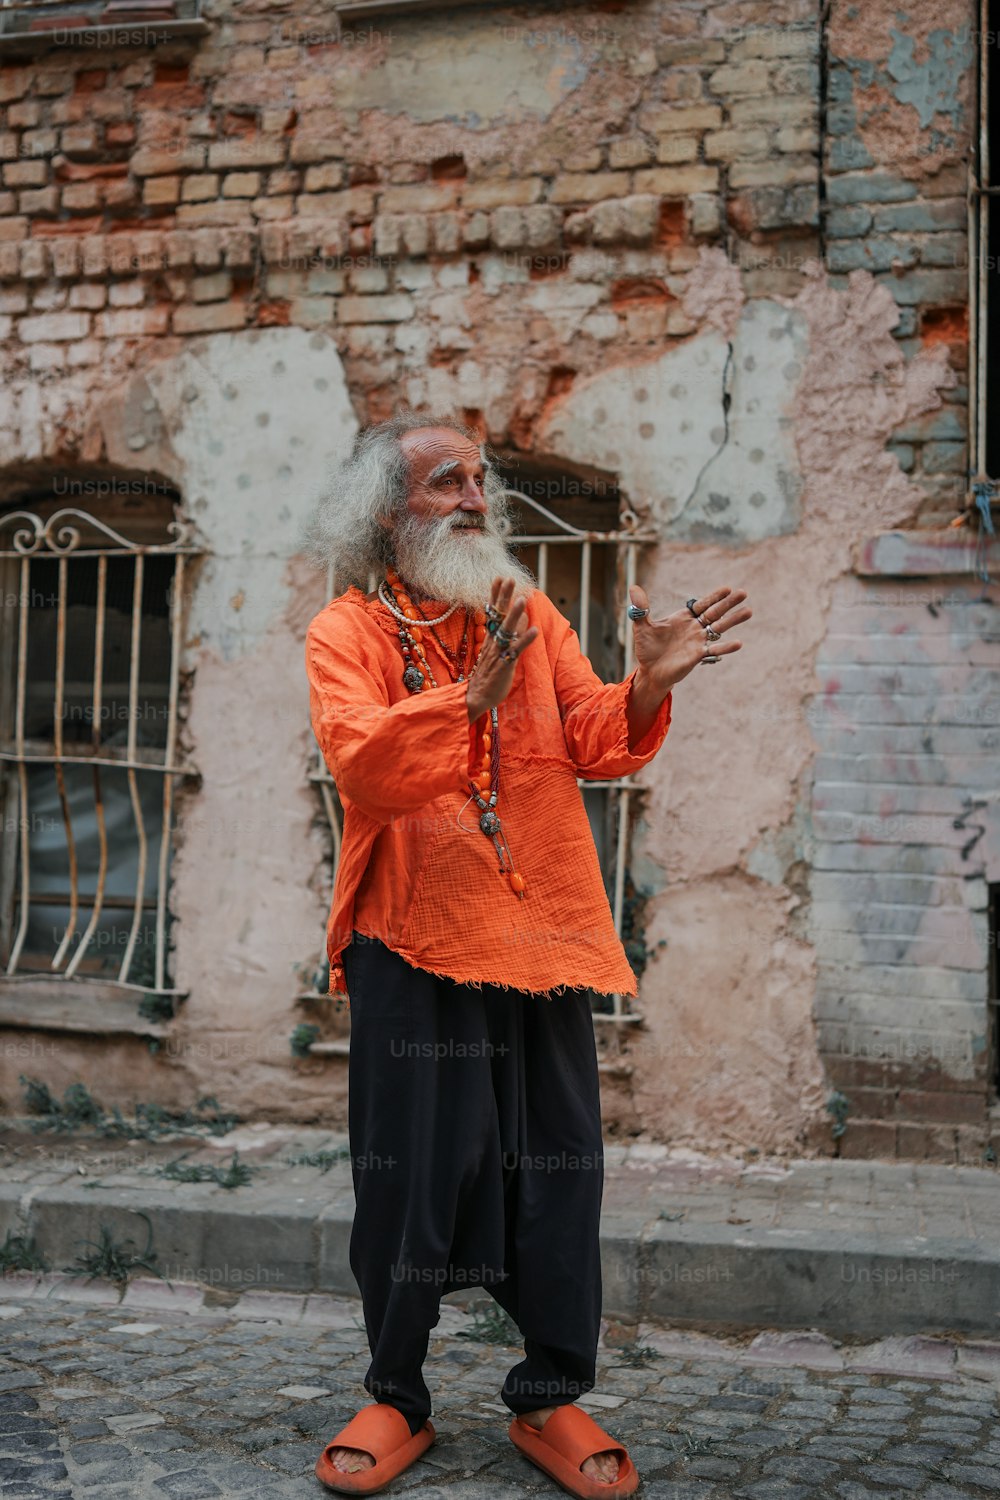 Un hombre con una camisa naranja parado frente a un edificio